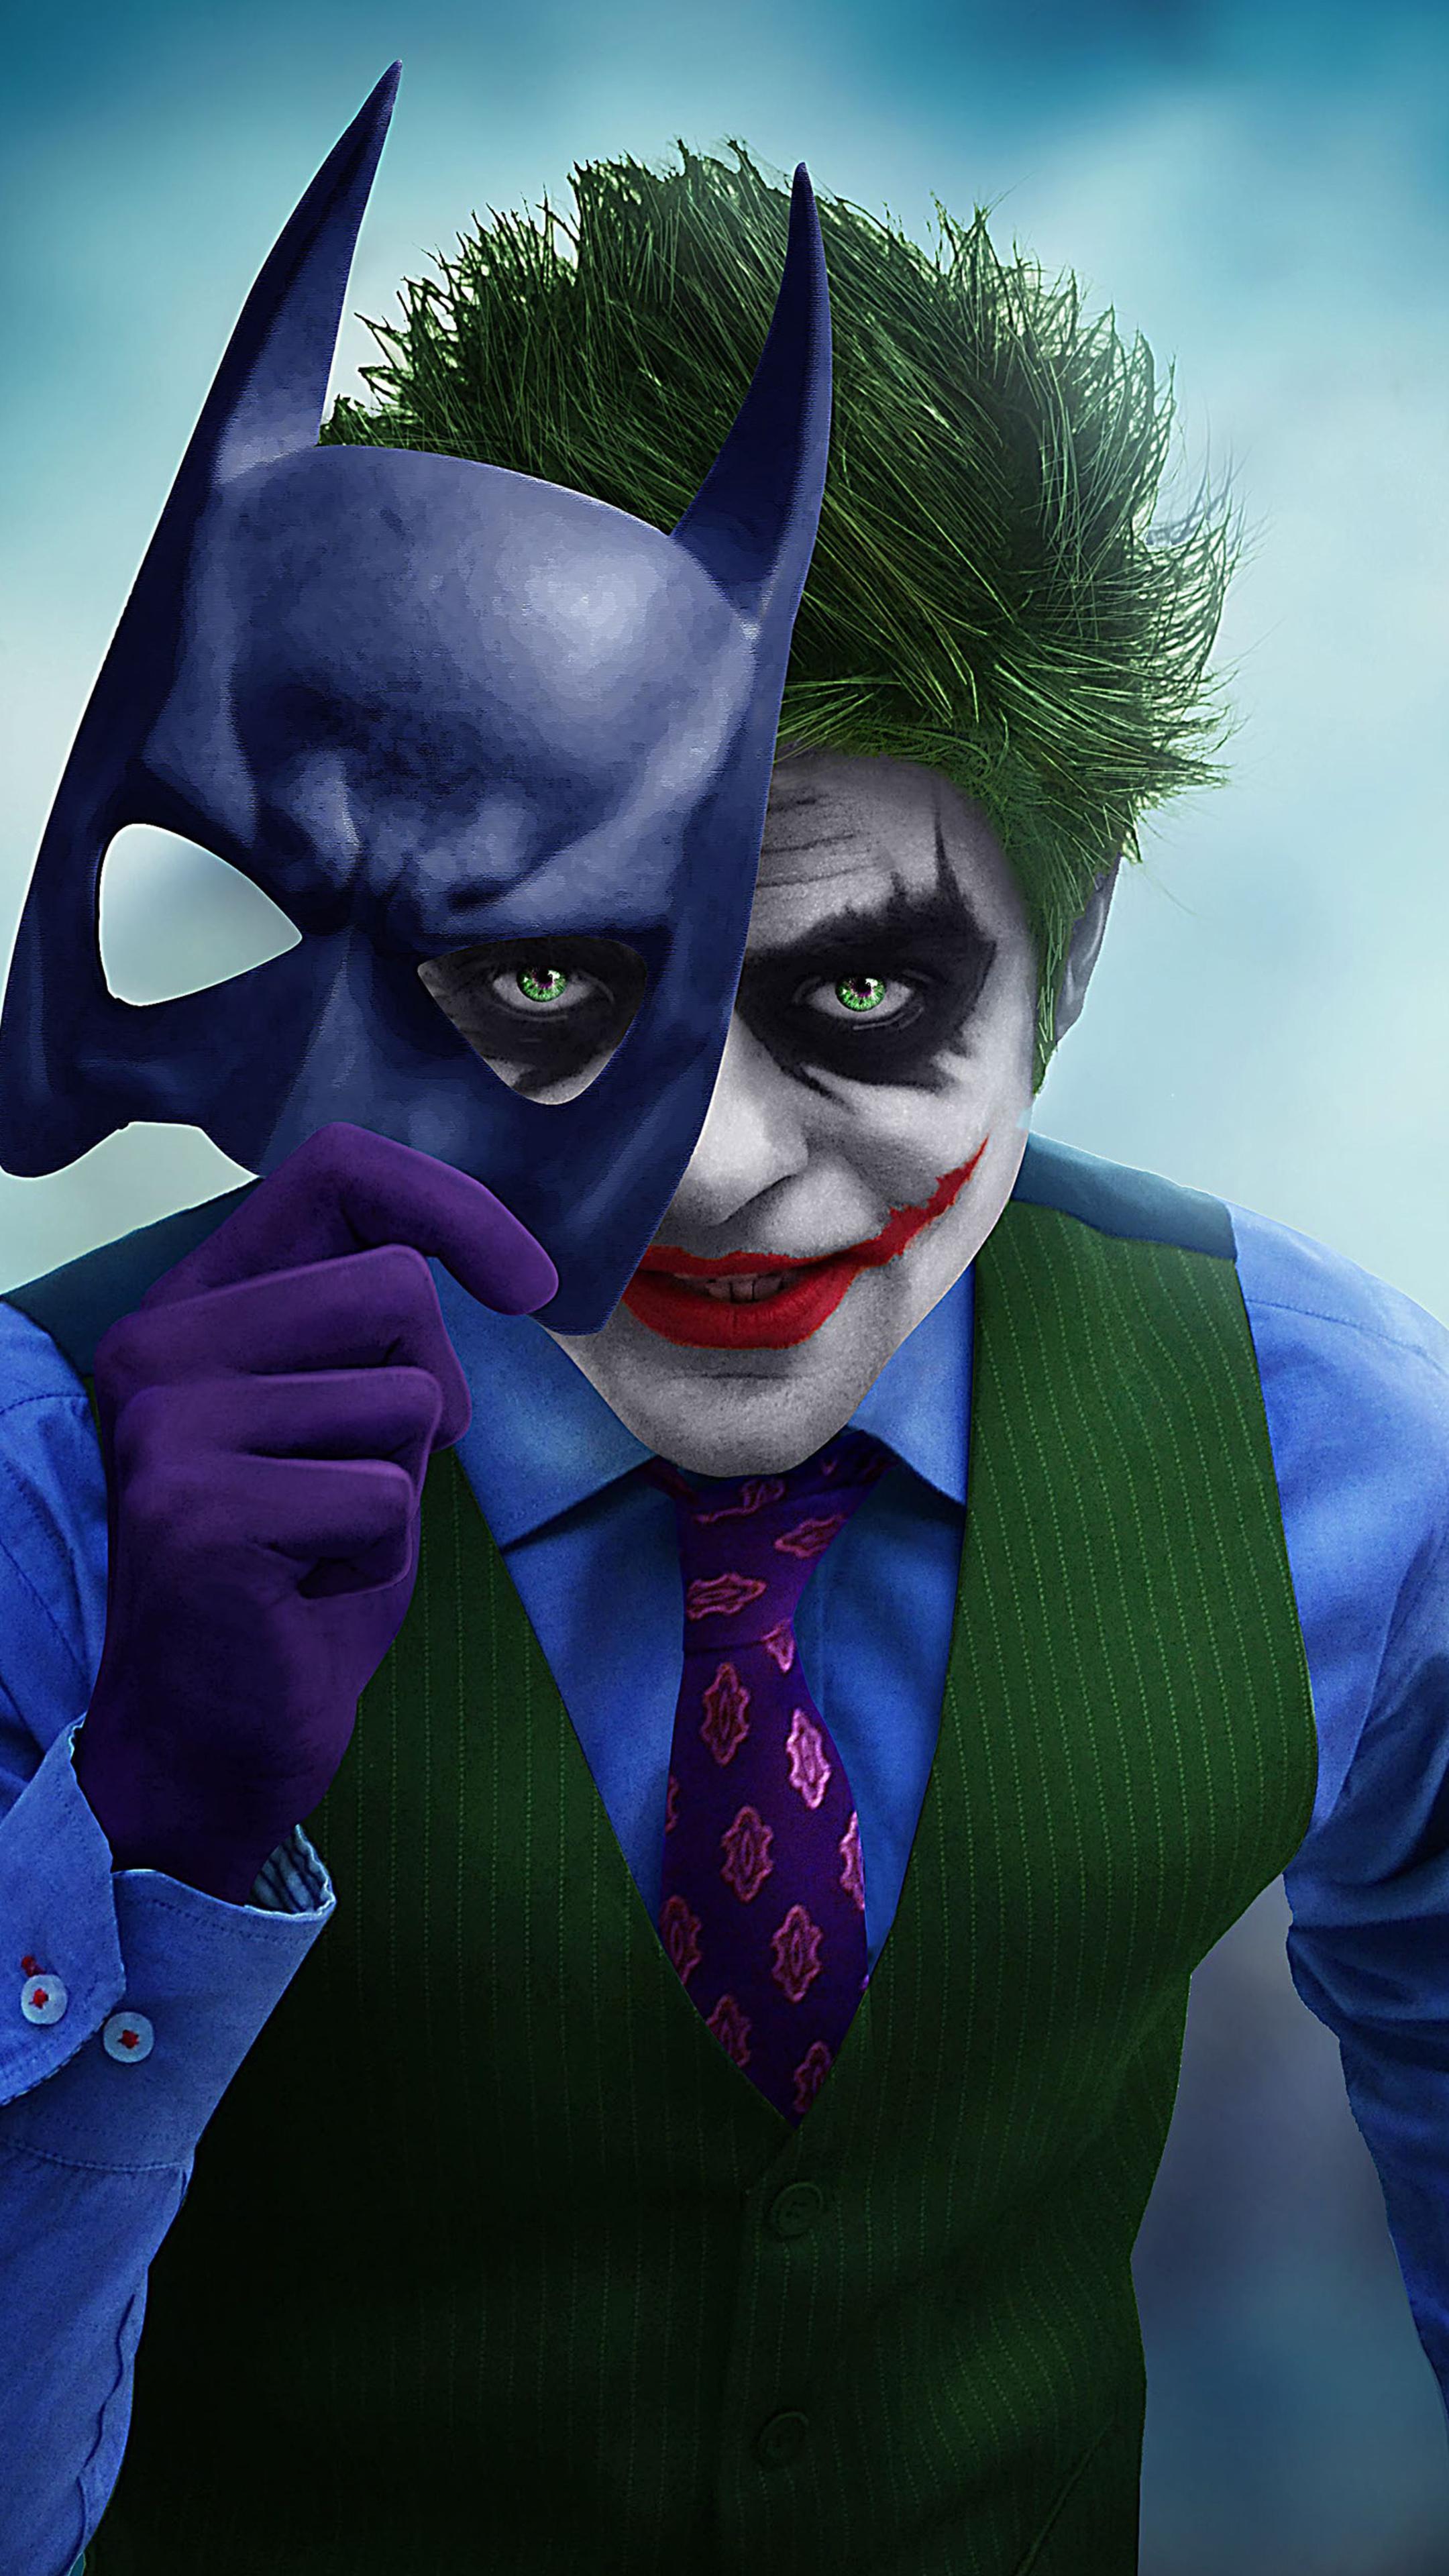 Joker With Batman Mask Off Sony Xperia X, XZ, Z5 Premium HD